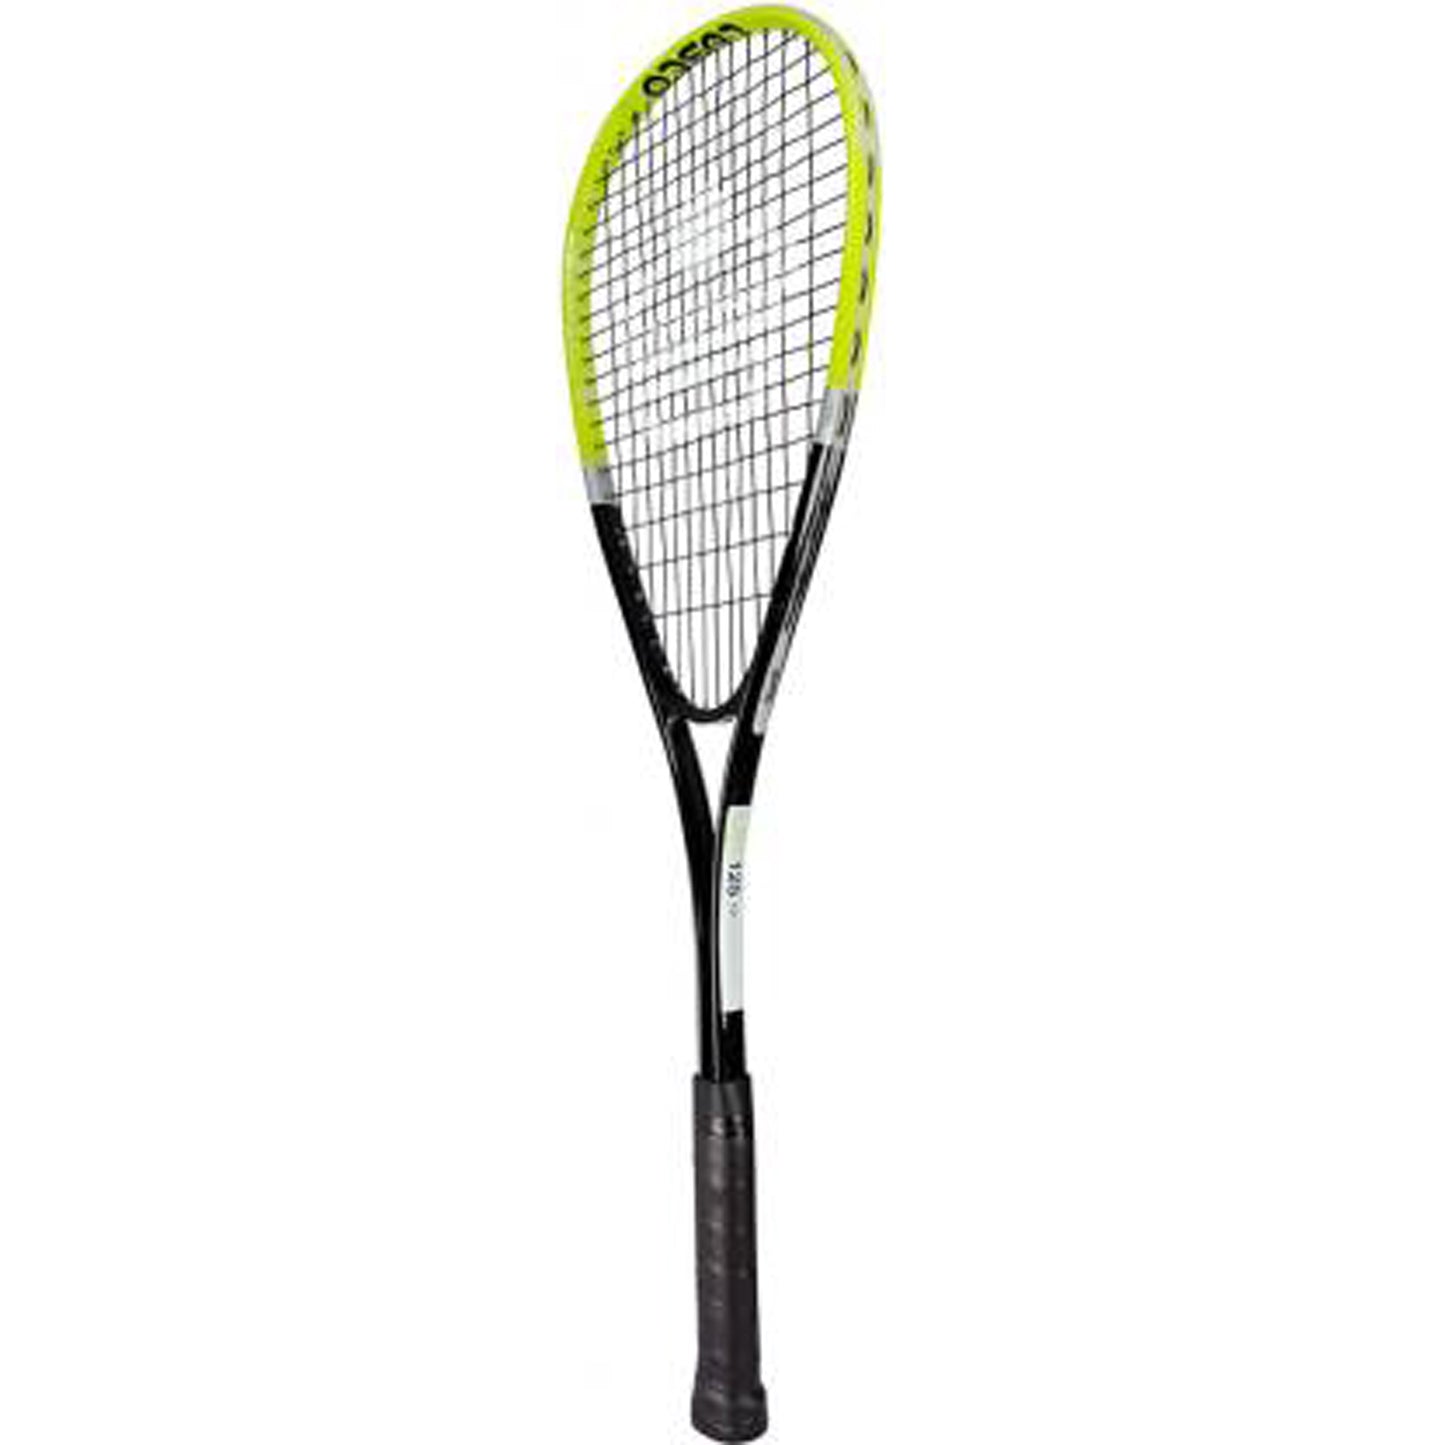 Cosco LST 125 Aluminium Squash Racquet - Best Price online Prokicksports.com